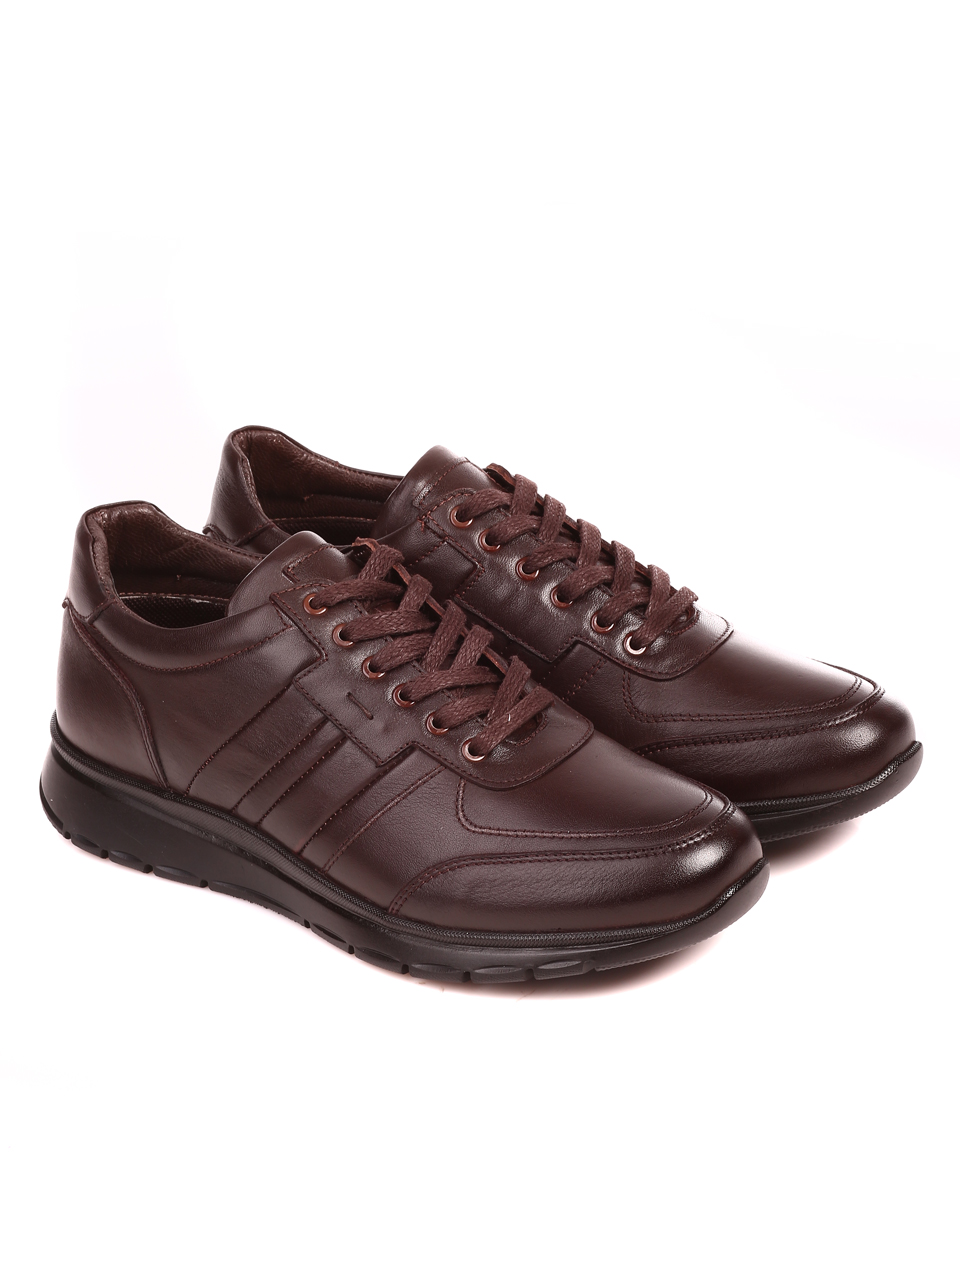 Ежедневни мъжки обувки от естествена кожа 7AT-22703 coffee